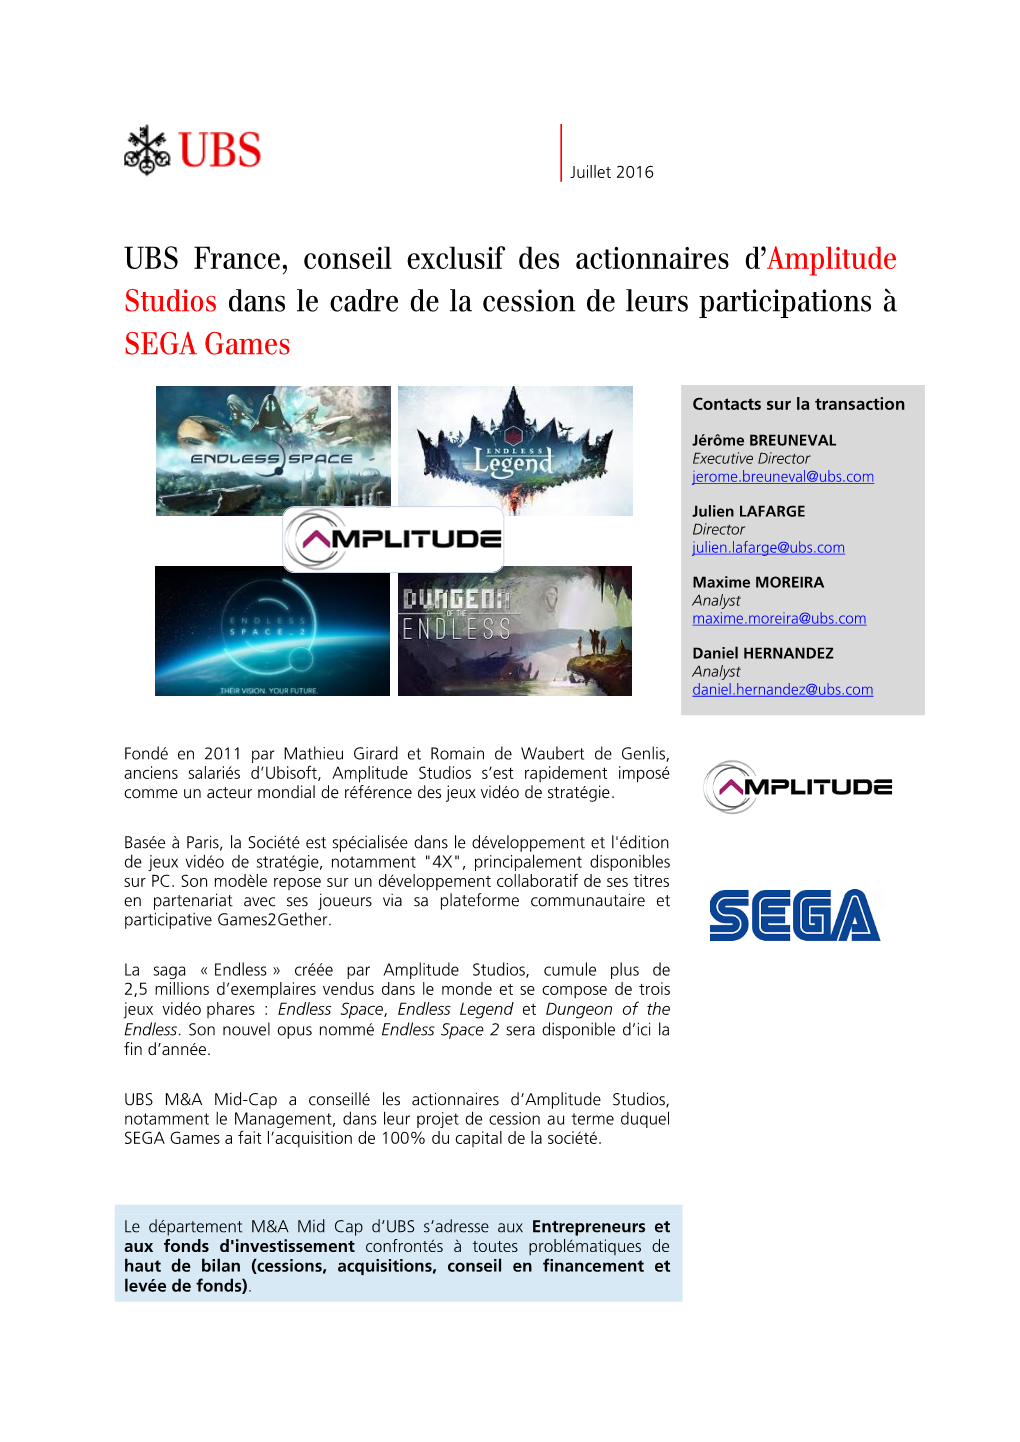 UBS France, Conseil Exclusif Des Actionnaires D' Amplitude Studios Dans Le Cadre De La Cession De Leurs Participations À SEGA